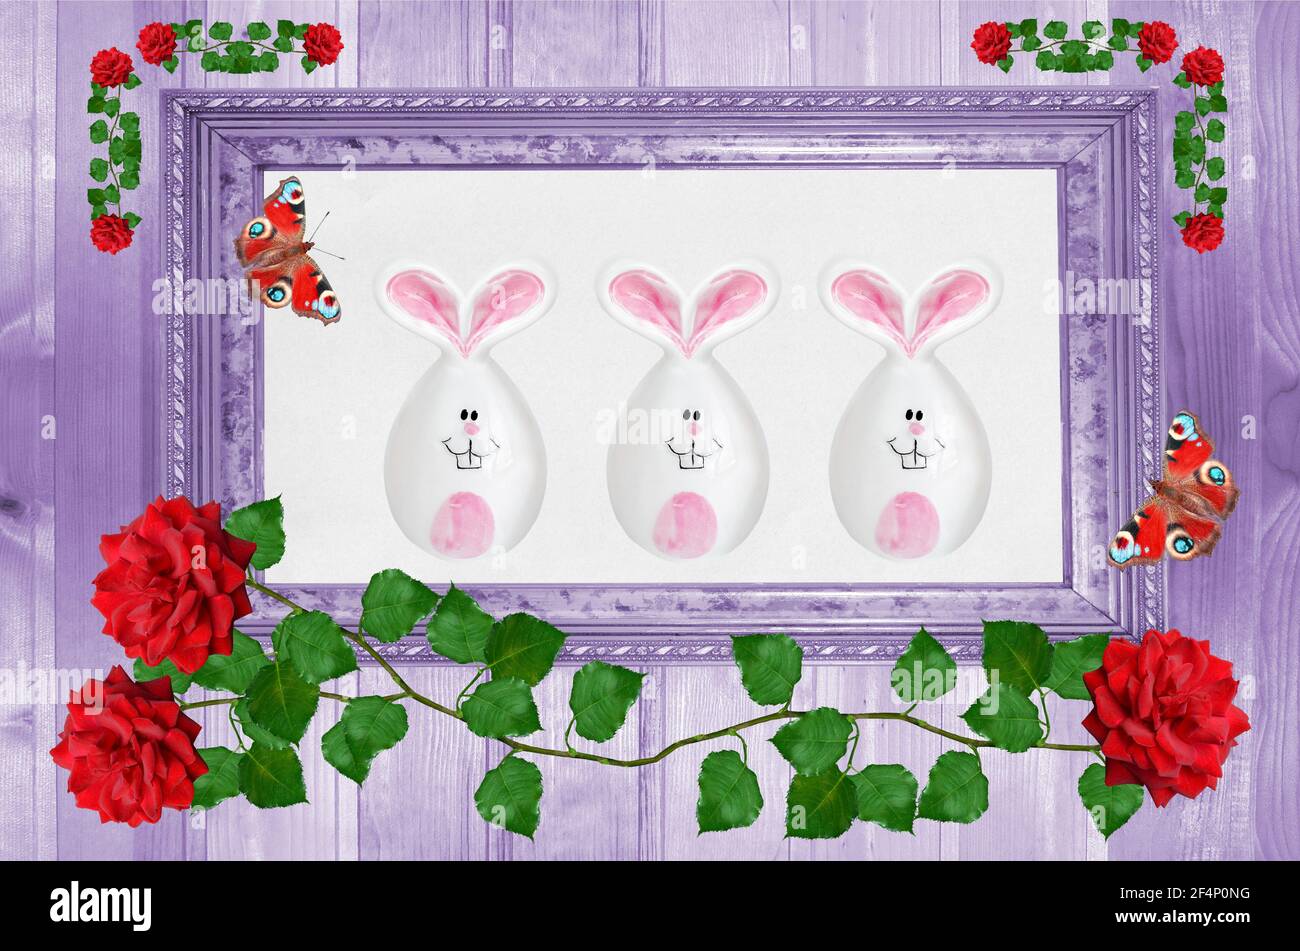 Jouets lapins de Pâques dans un cadre, fleurs et papillons sur fond violet. Le concept de Pâques Banque D'Images